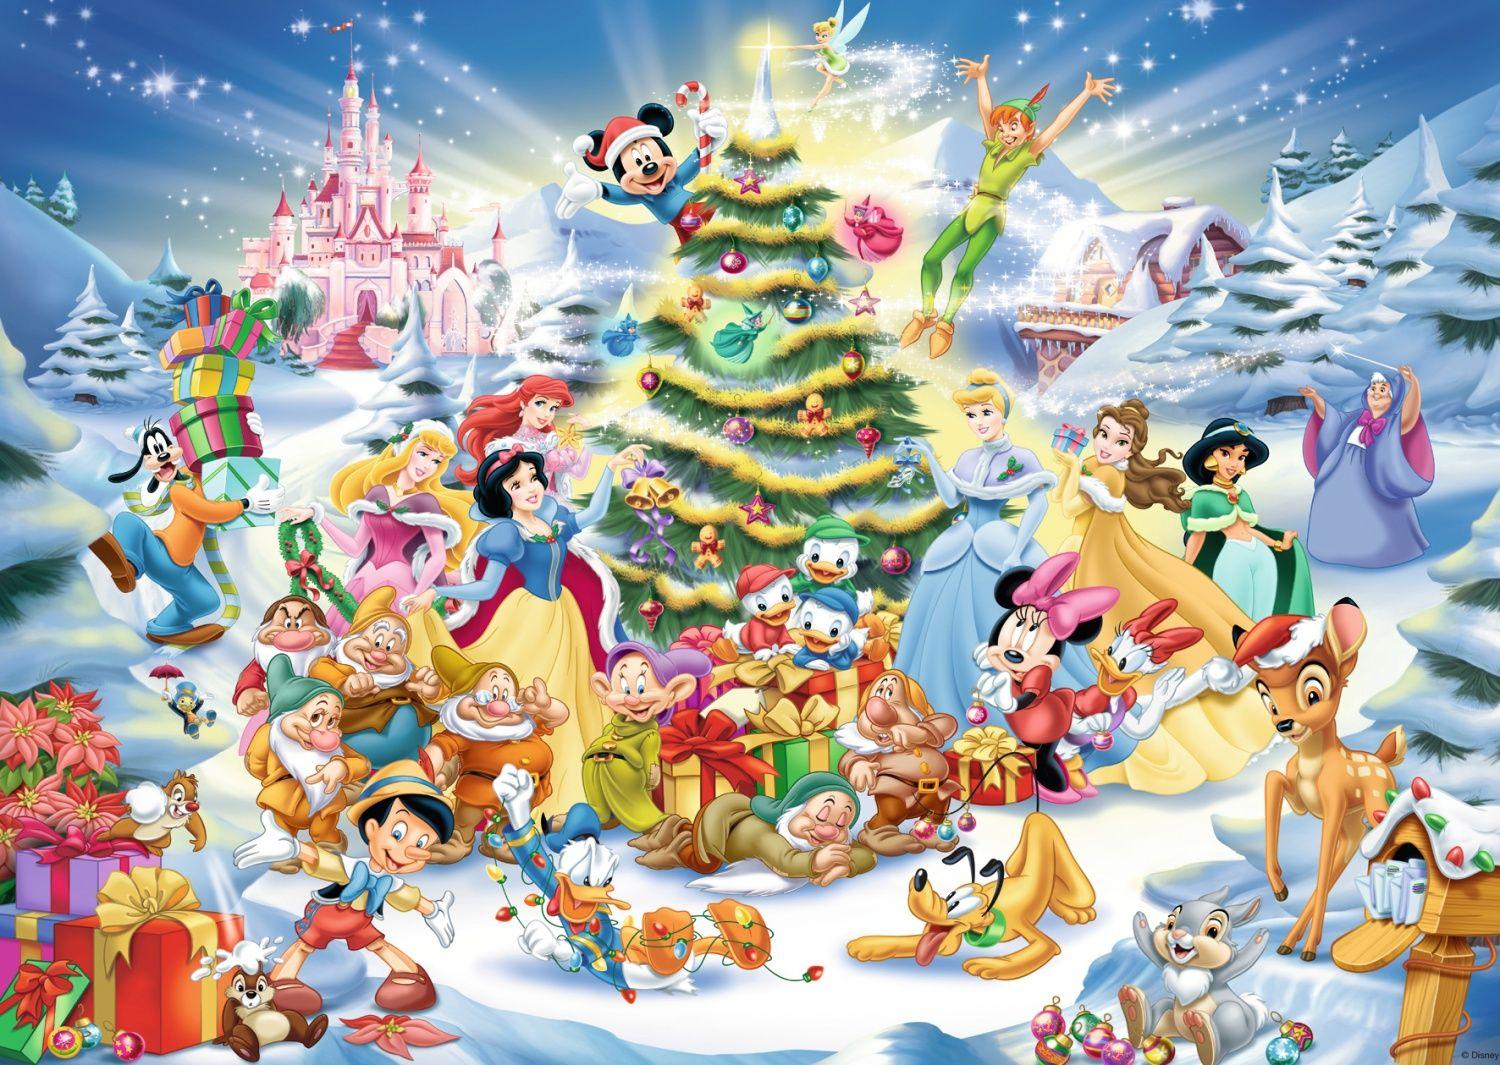 Puzzle Disney Ravensburger 1000 pièces Train de Noël - Tous à bord –